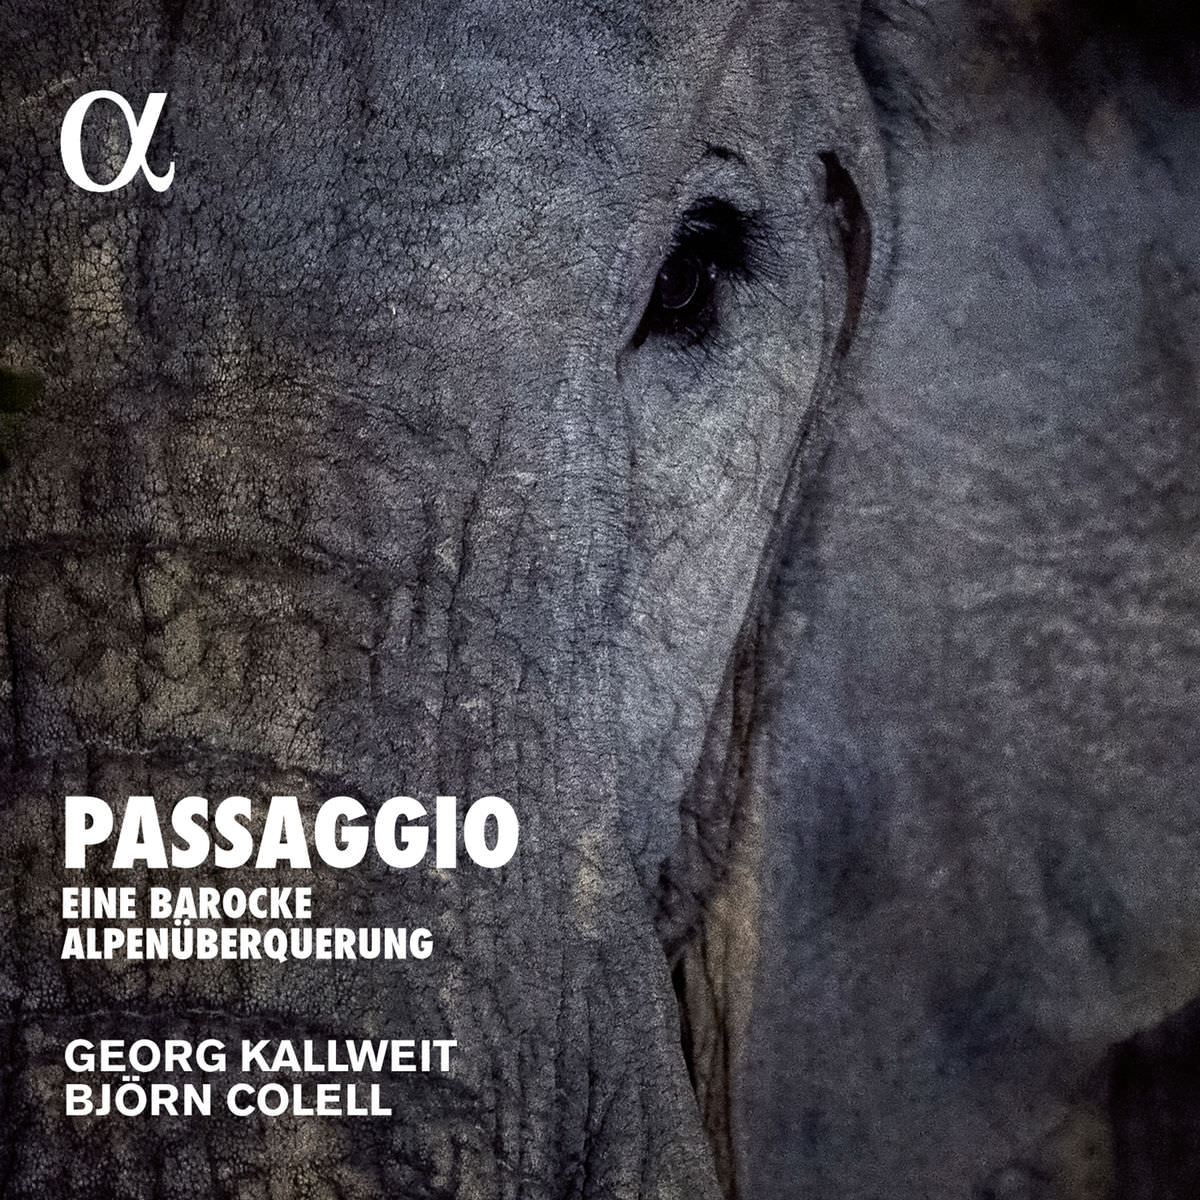 Georg Kallweit & Bjorn Colell - Passaggio, eine barocke Alpenuberquerung (2017) [FLAC 24bit/96kHz]